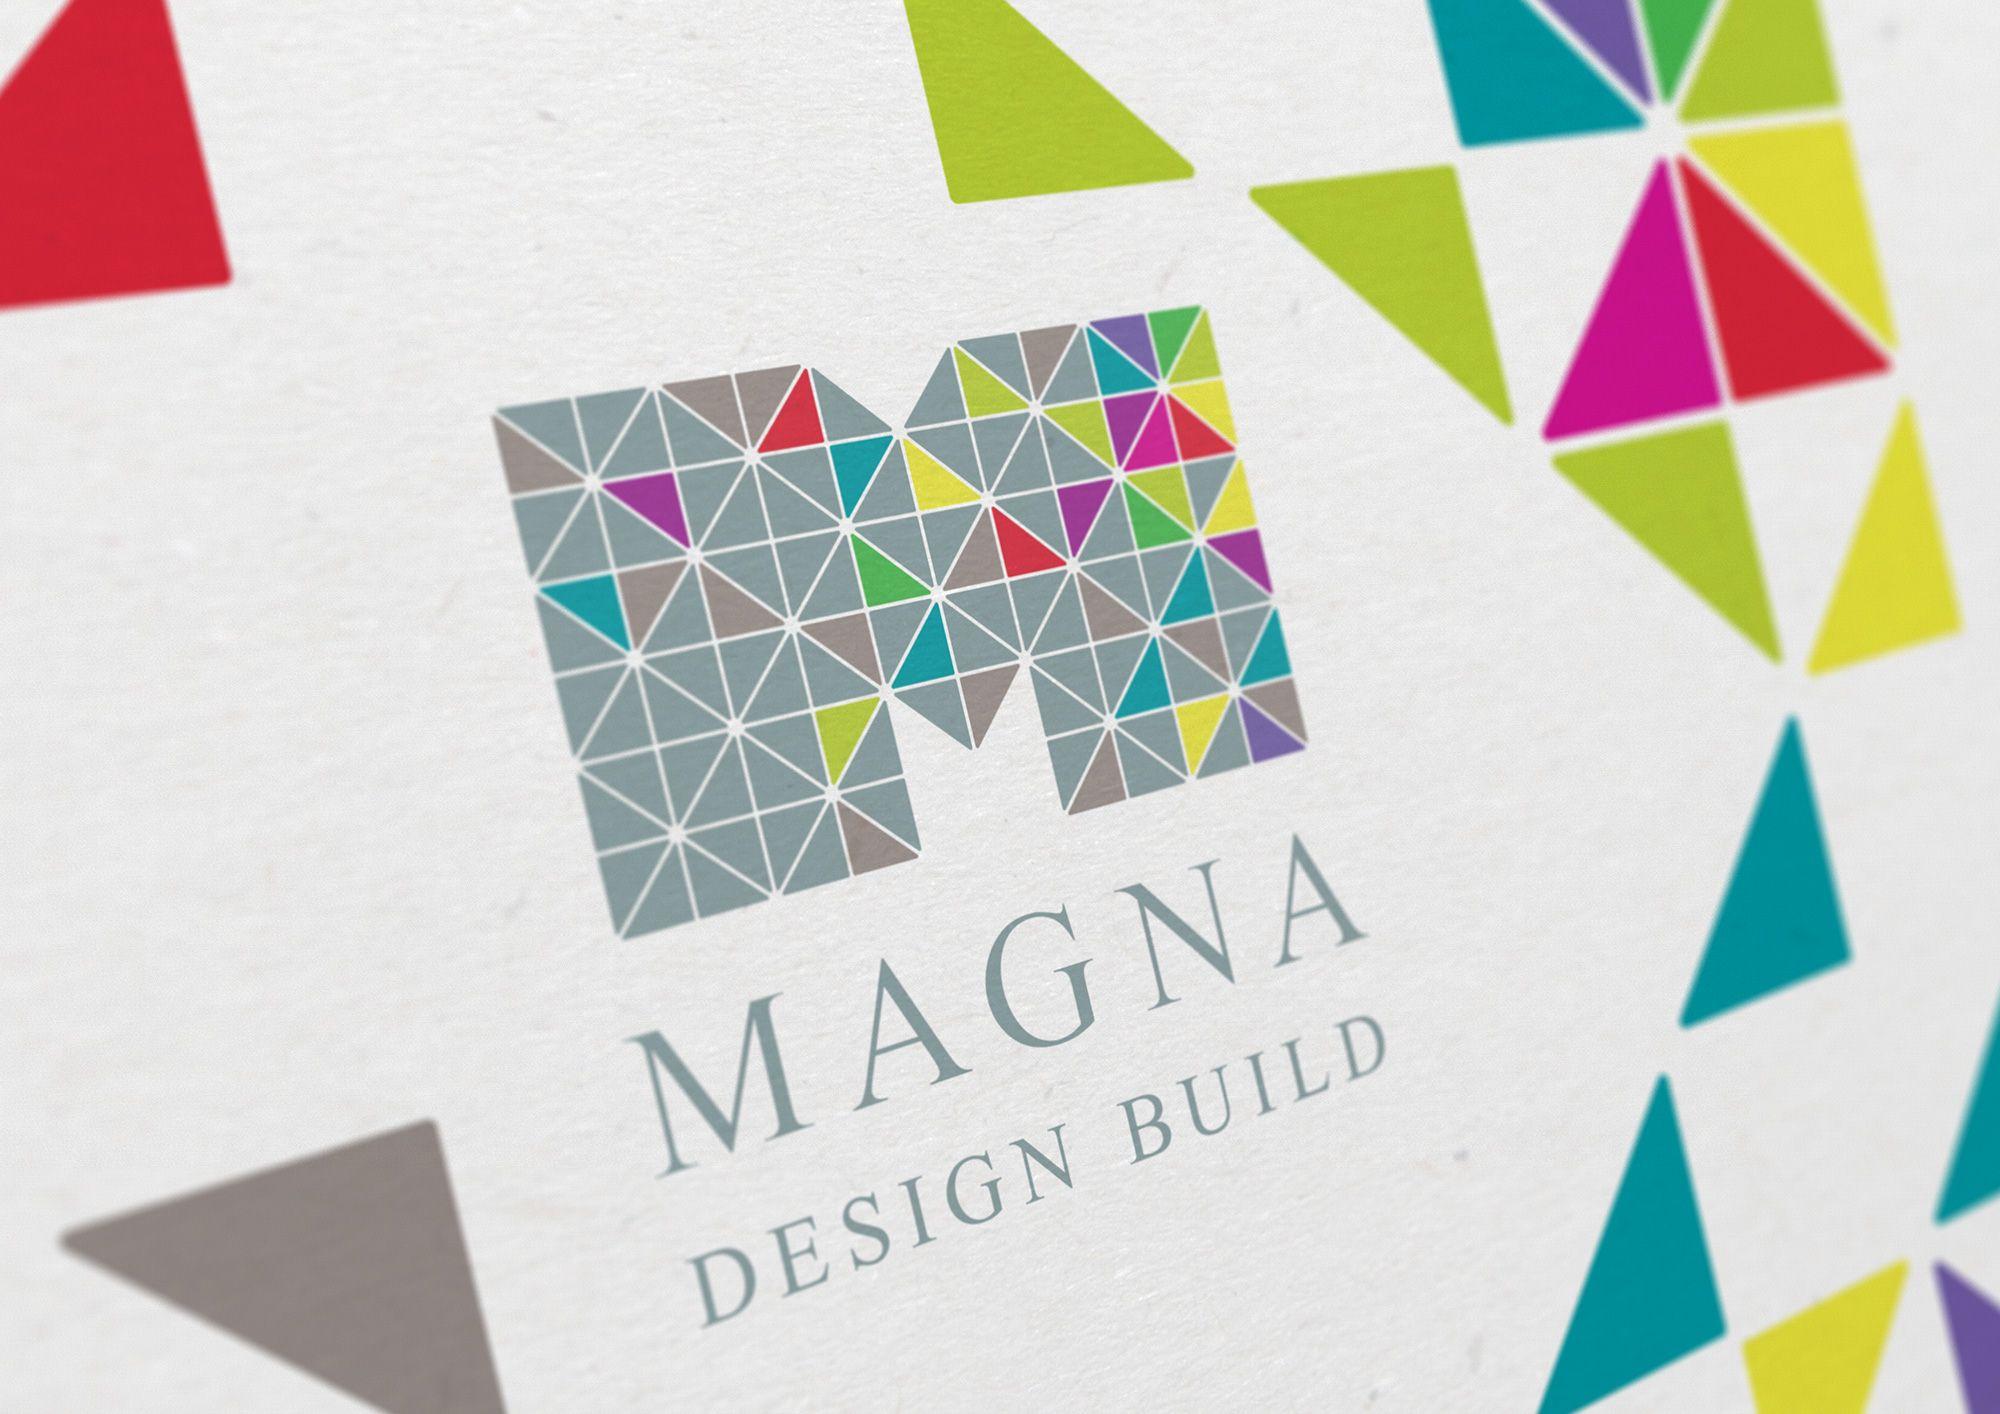 Magna Logo - Magna